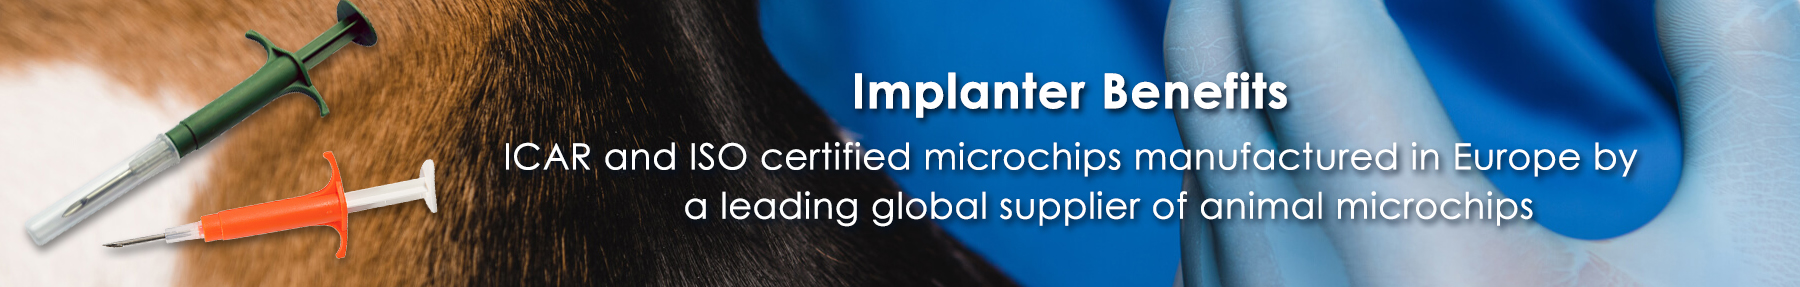 Implanter Benefits